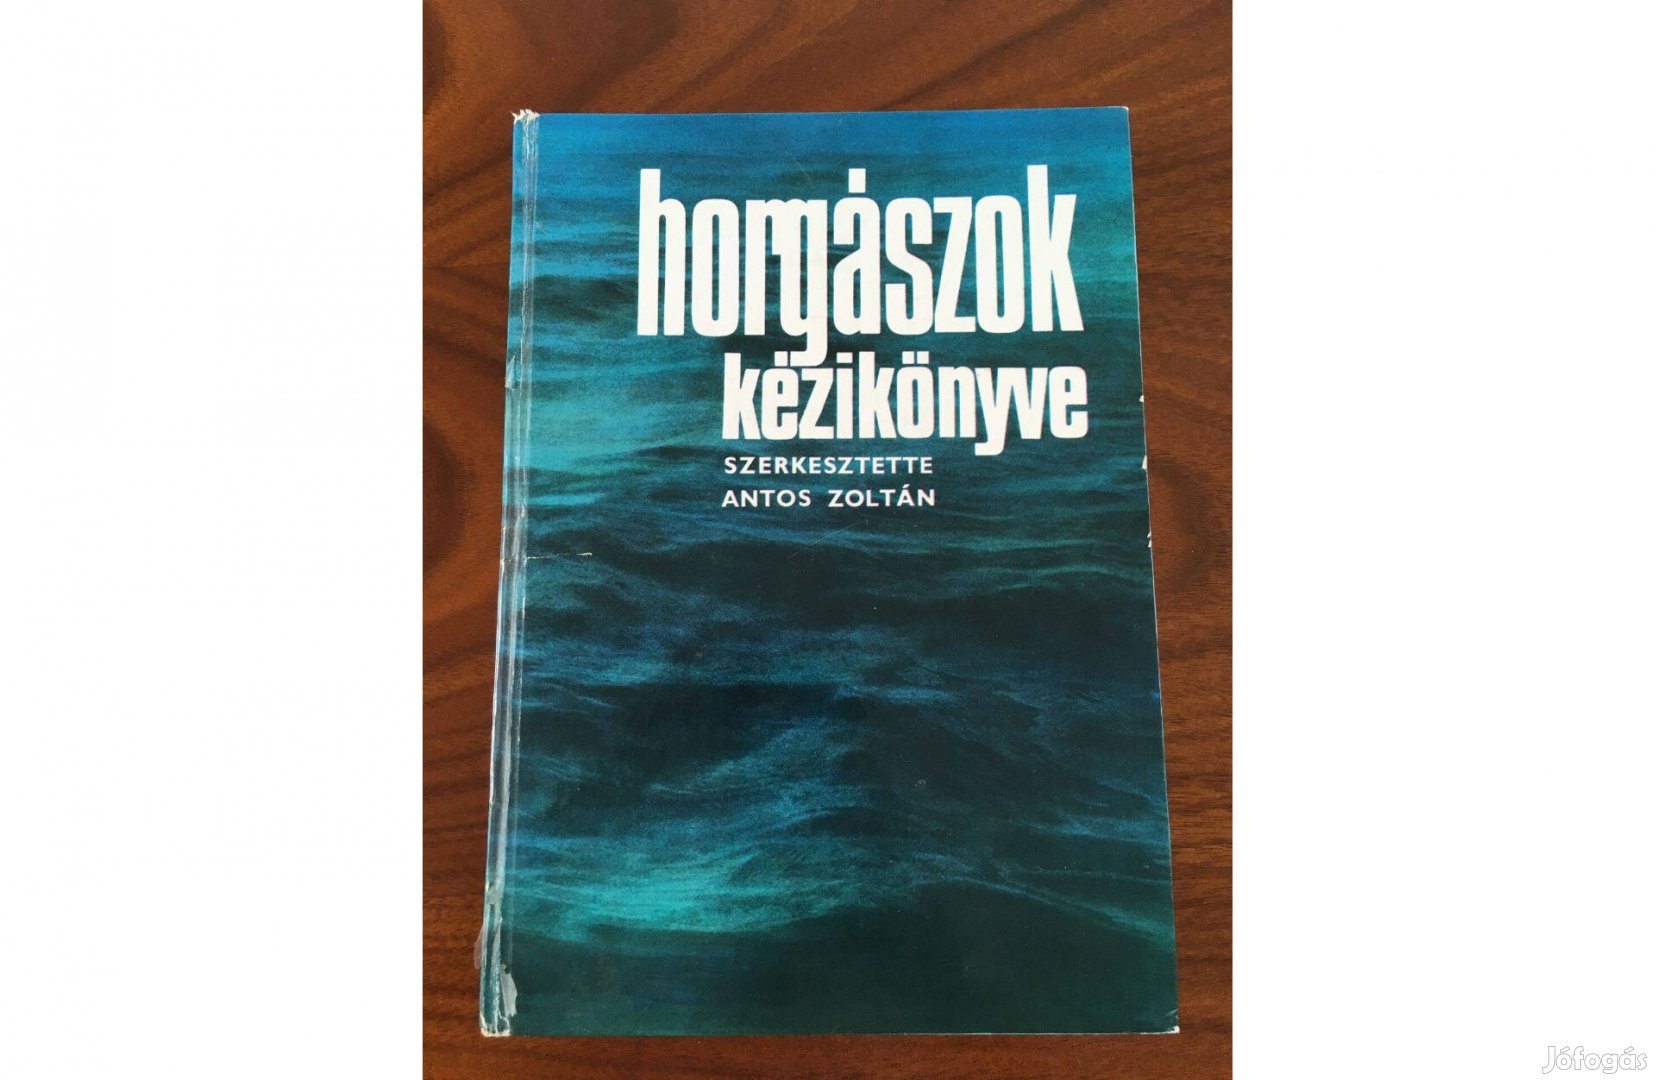 Antos Zoltán: Horgászok kézikönyve - 1982. (horgászat)